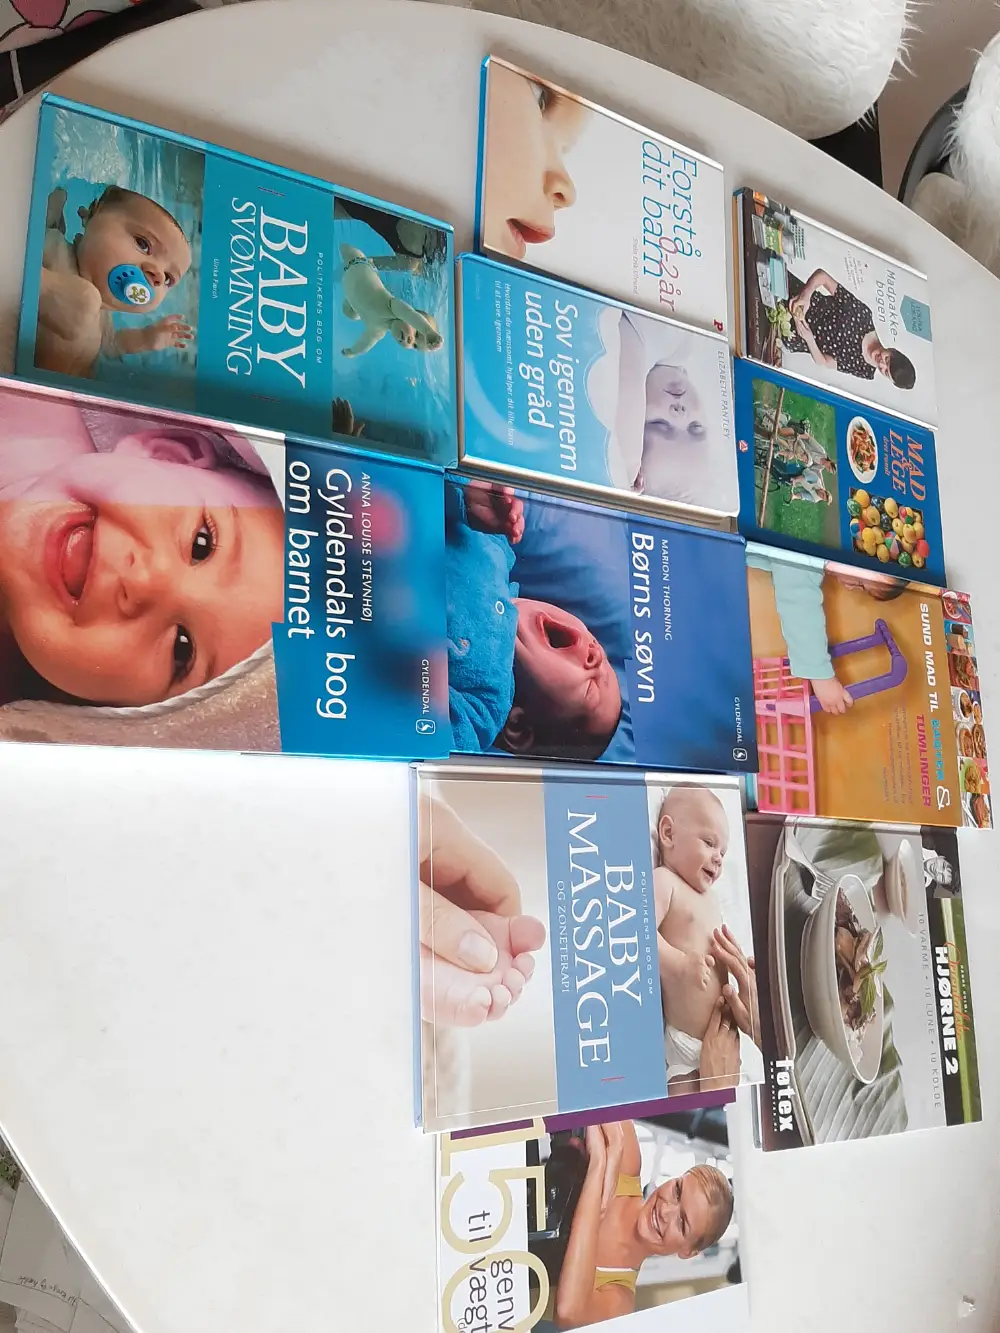 god bogpakke om baby og børn Bøger